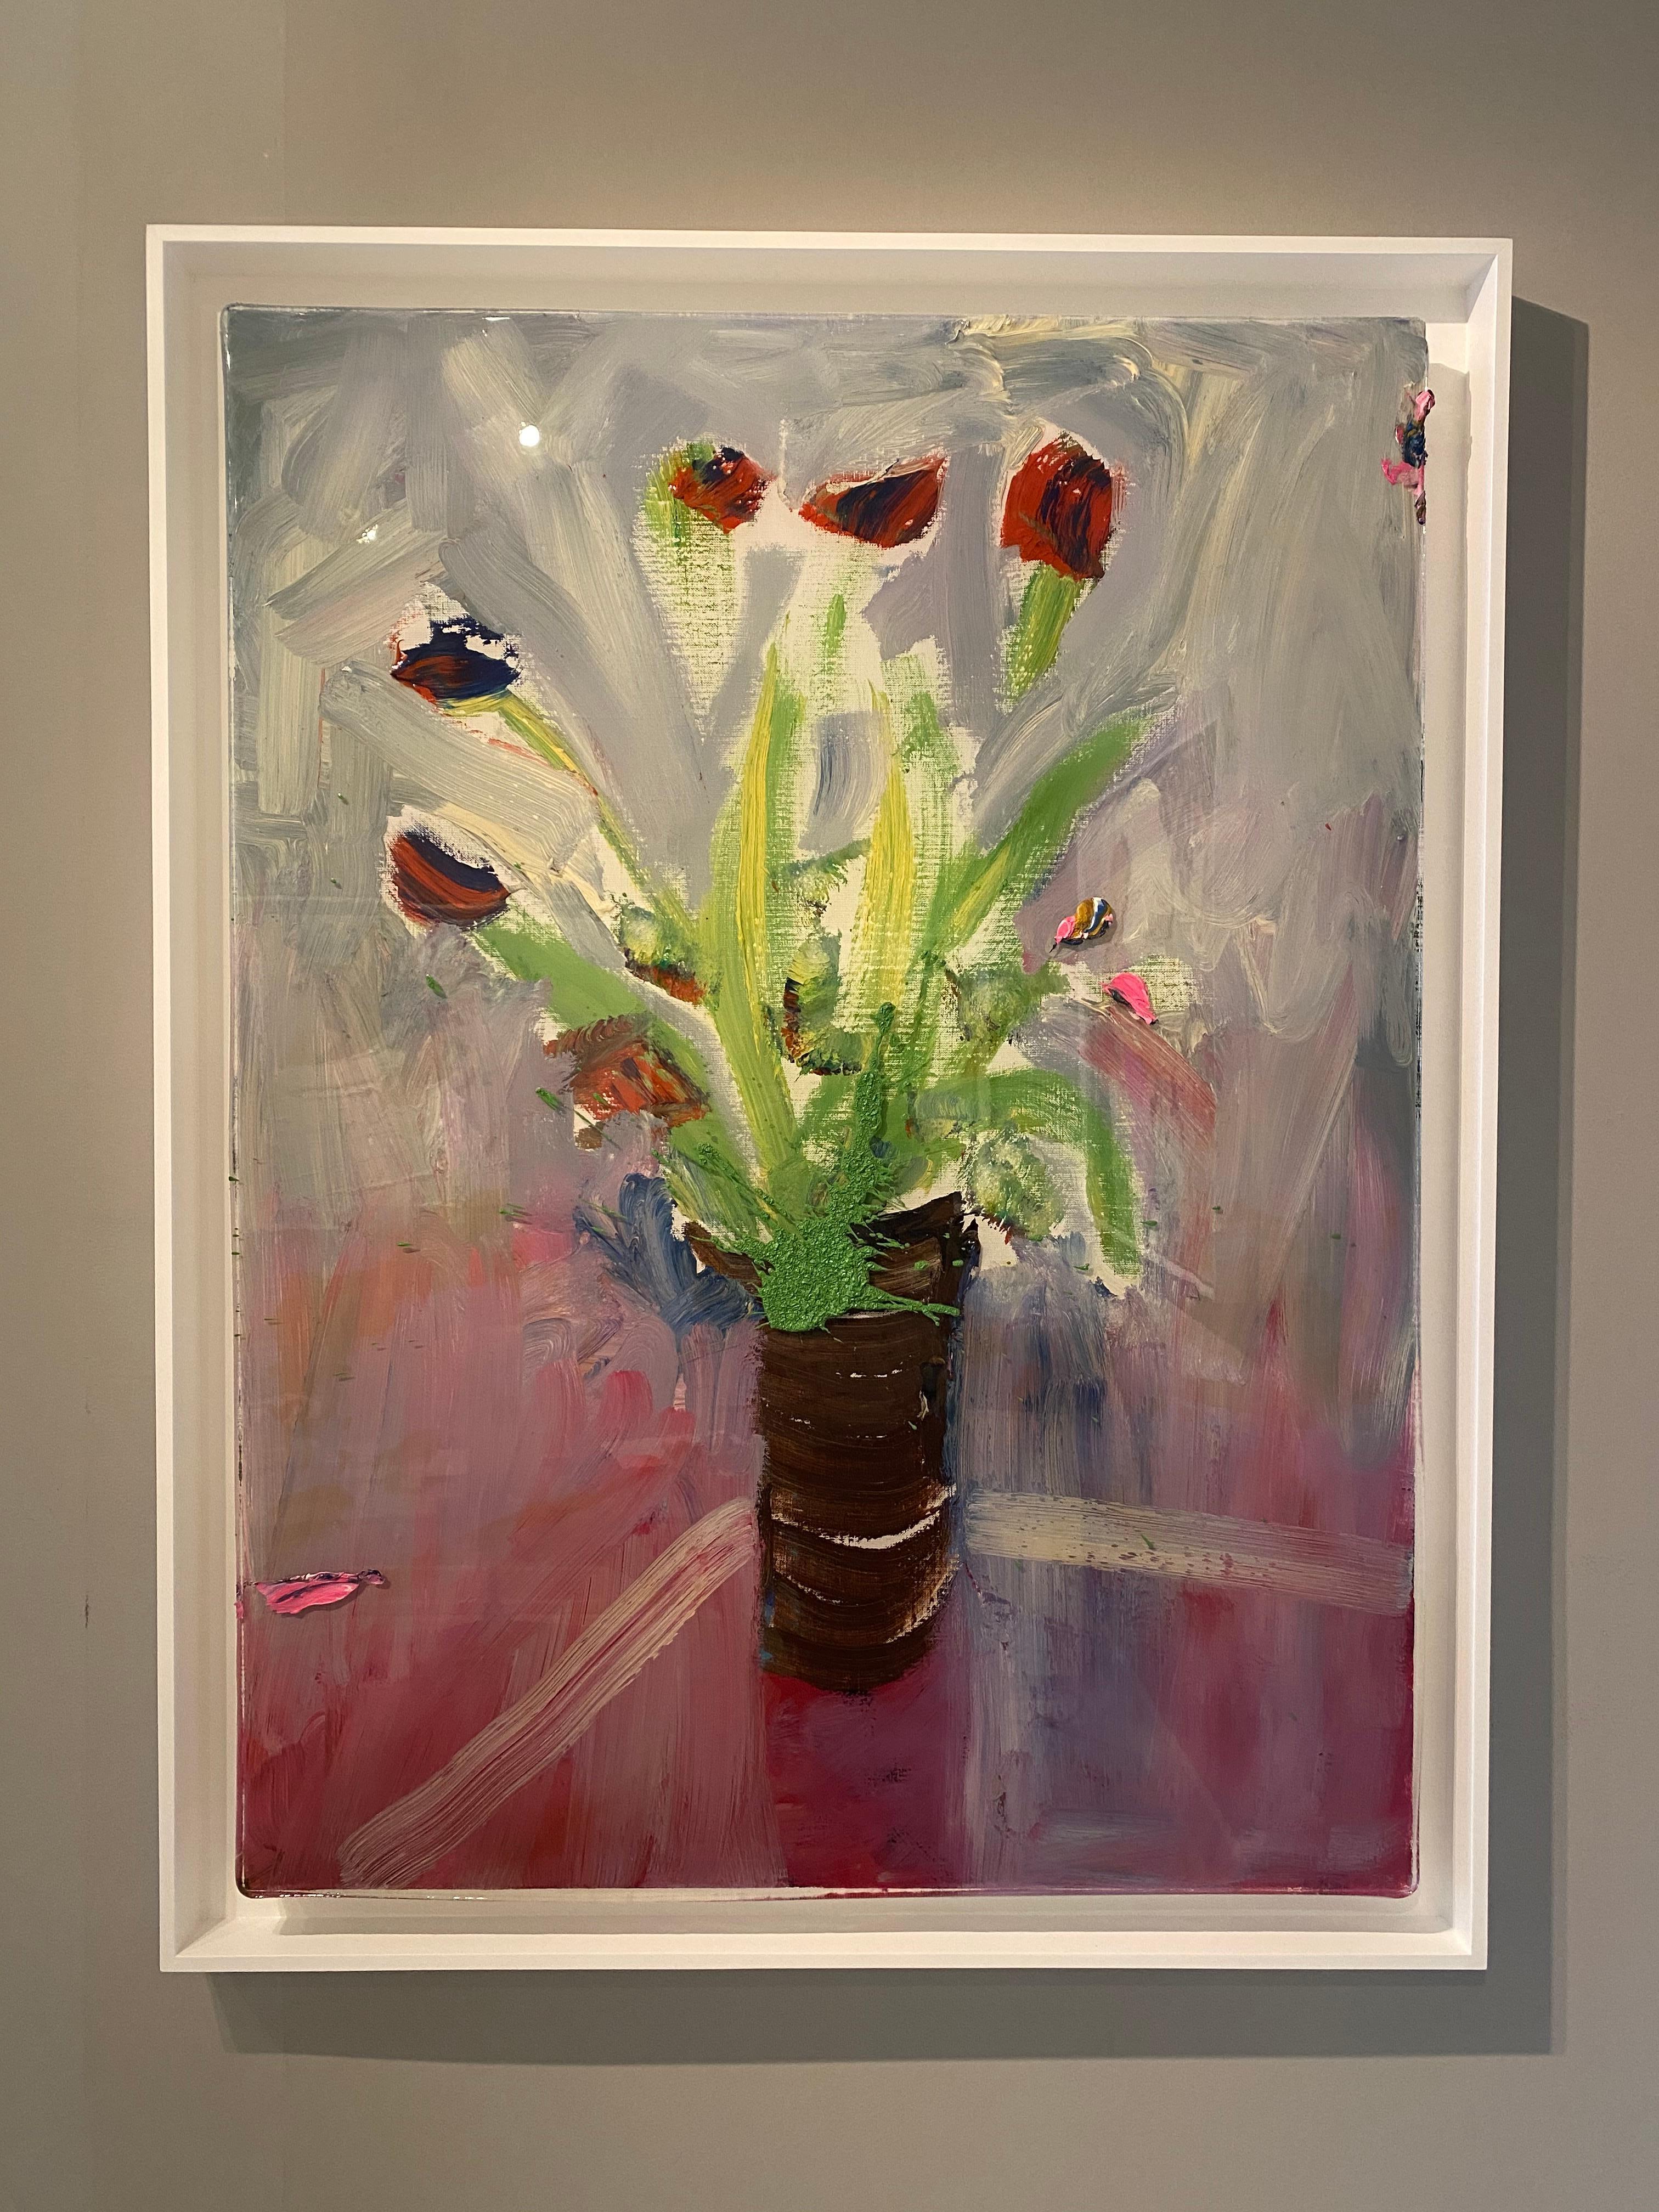 Mauve Tulips on Glass Table - Painting by Darius Yektai